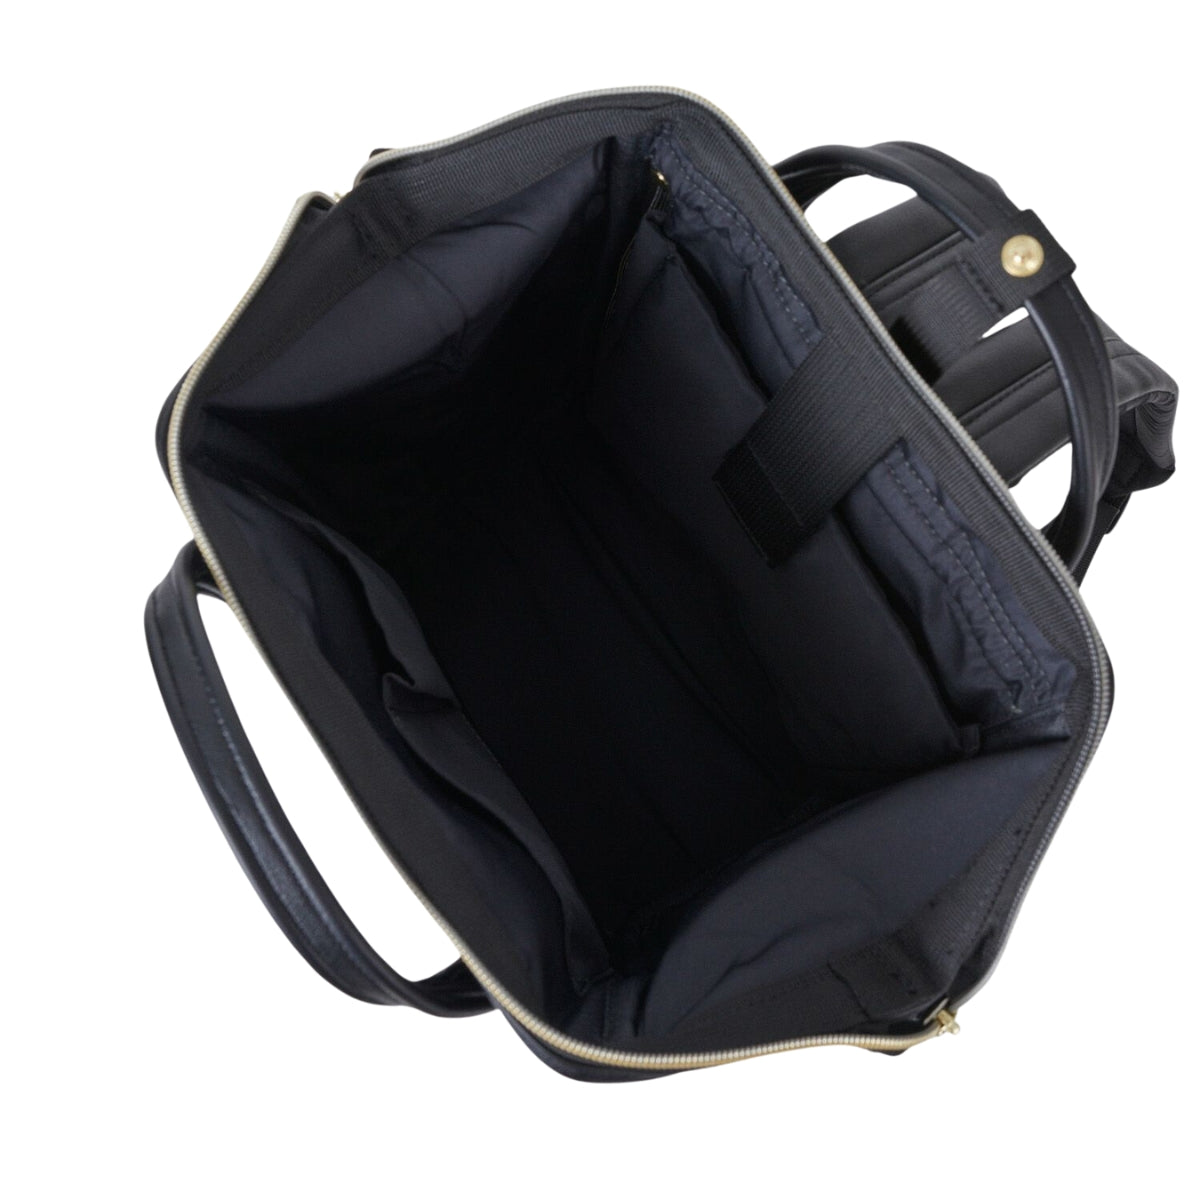 Anello Retro Backpack Small